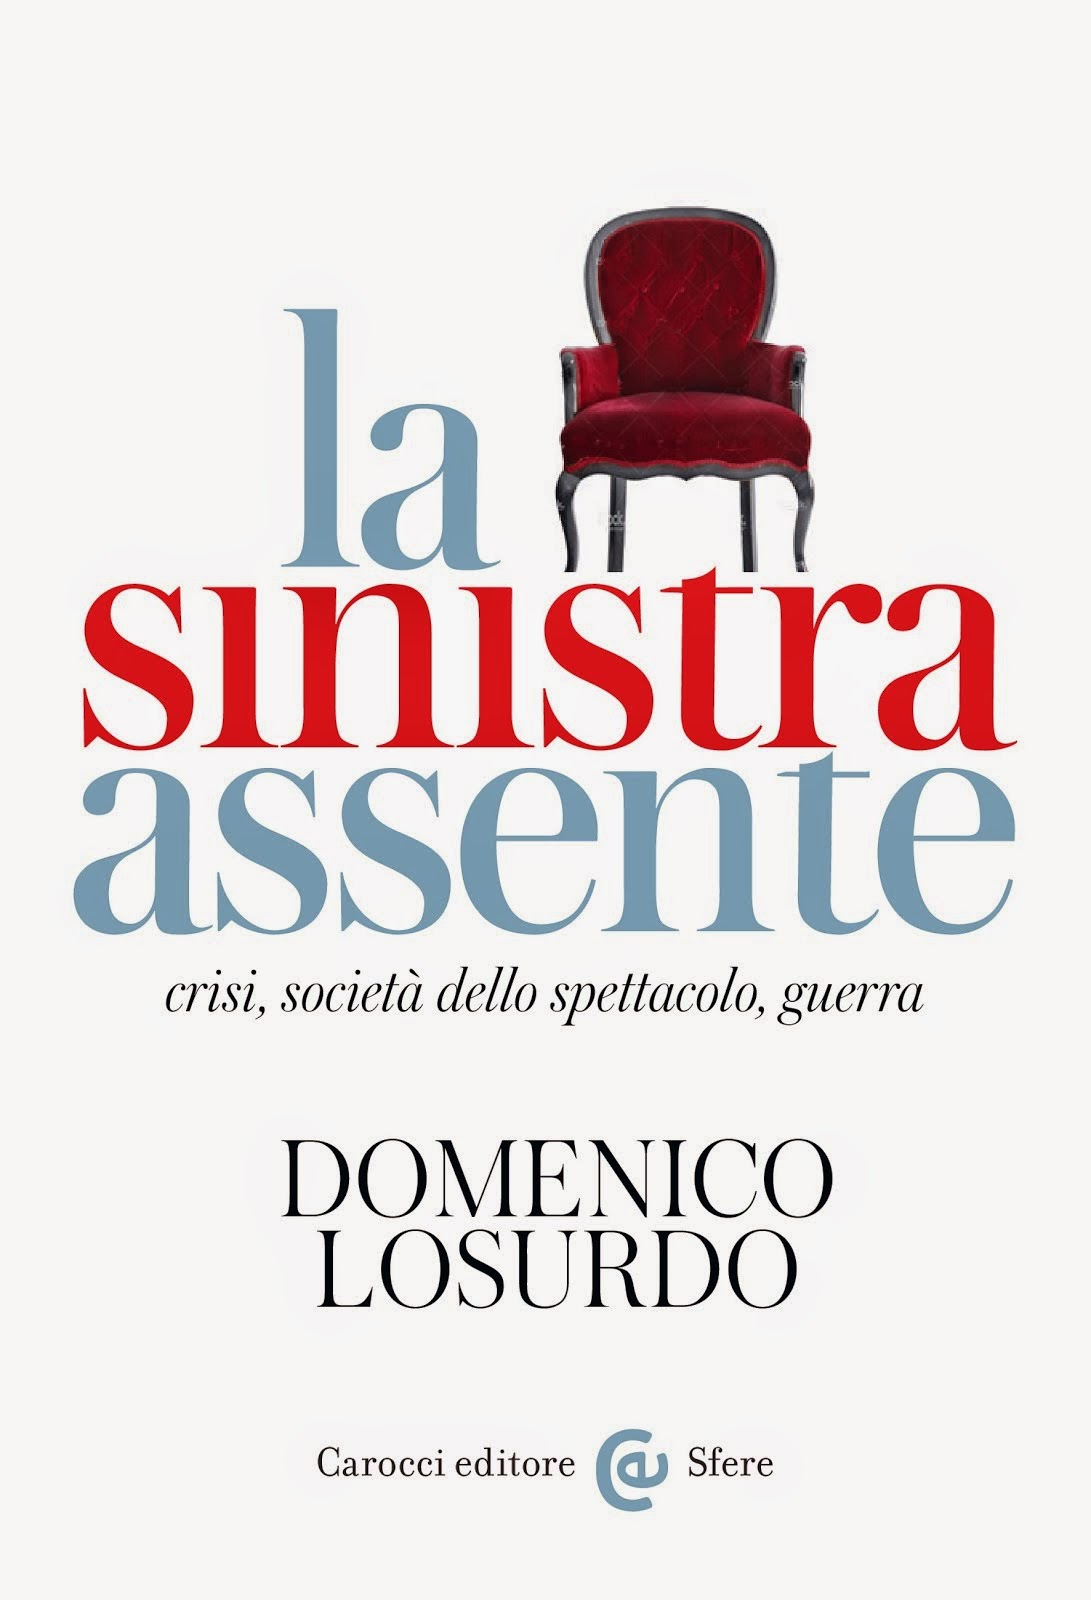 Domenico Losurdo: La sinistra assente. Crisi, società dello spettacolo, guerra, Carocci, Roma 2014